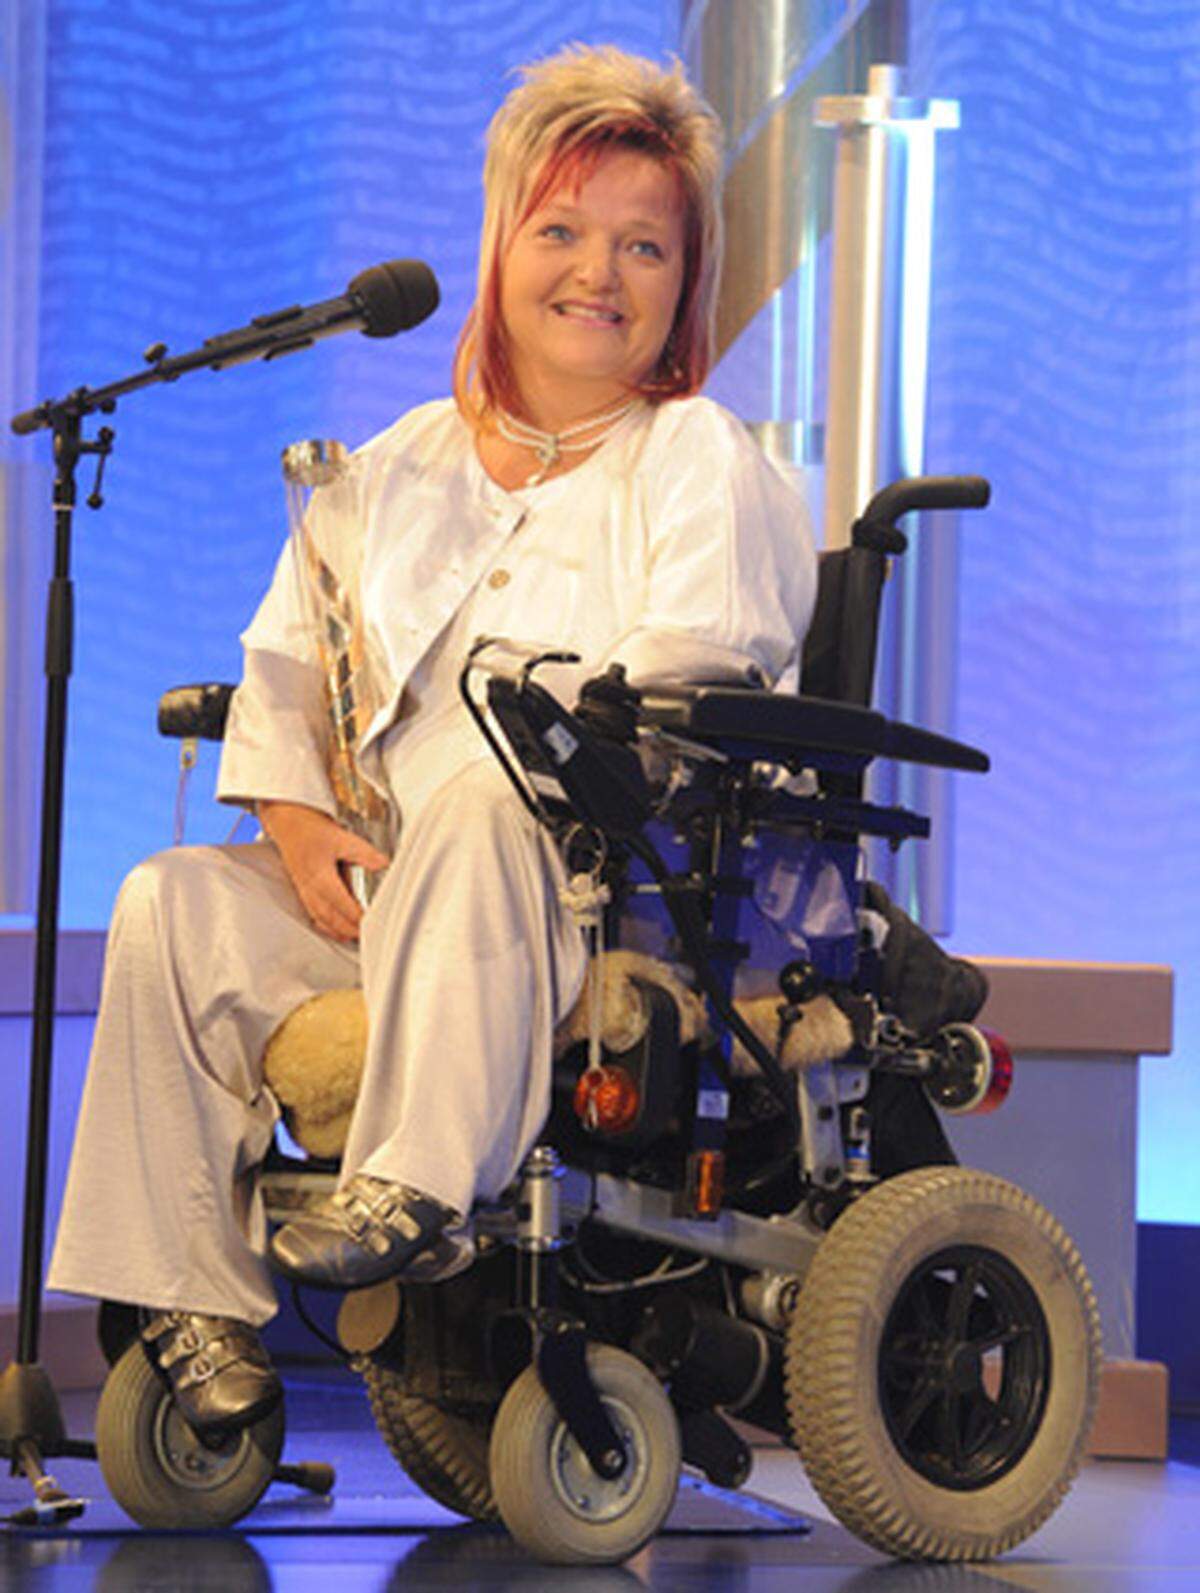 Auch die Ehrung für Humanitäres Engagement ging an diesem Abend an eine Dame. Die Tirolerin Marianne Hengl, die selbst im Rollstuhl sitzt und vor fast 20 Jahren den Verein RollOn gegründet hat, durfte sich aus zwei Gründen freuen.